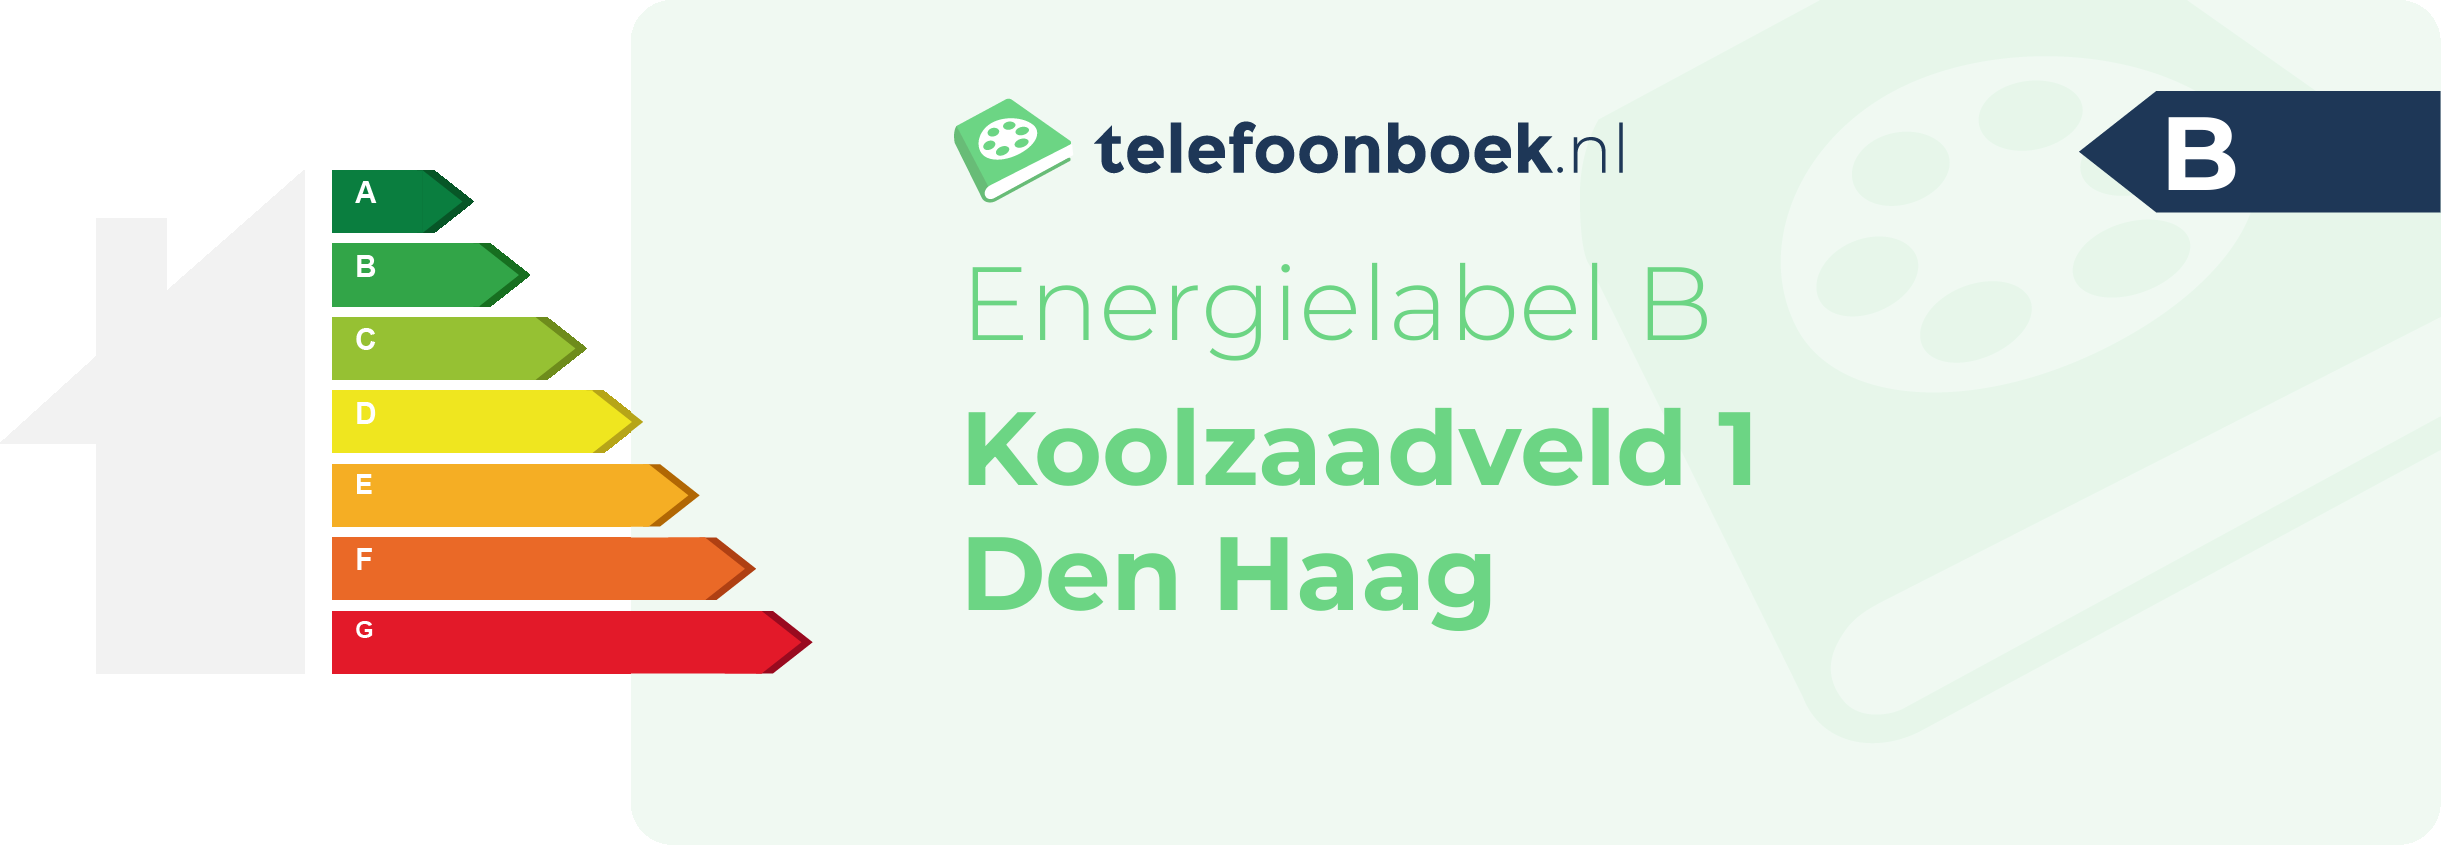 Energielabel Koolzaadveld 1 Den Haag